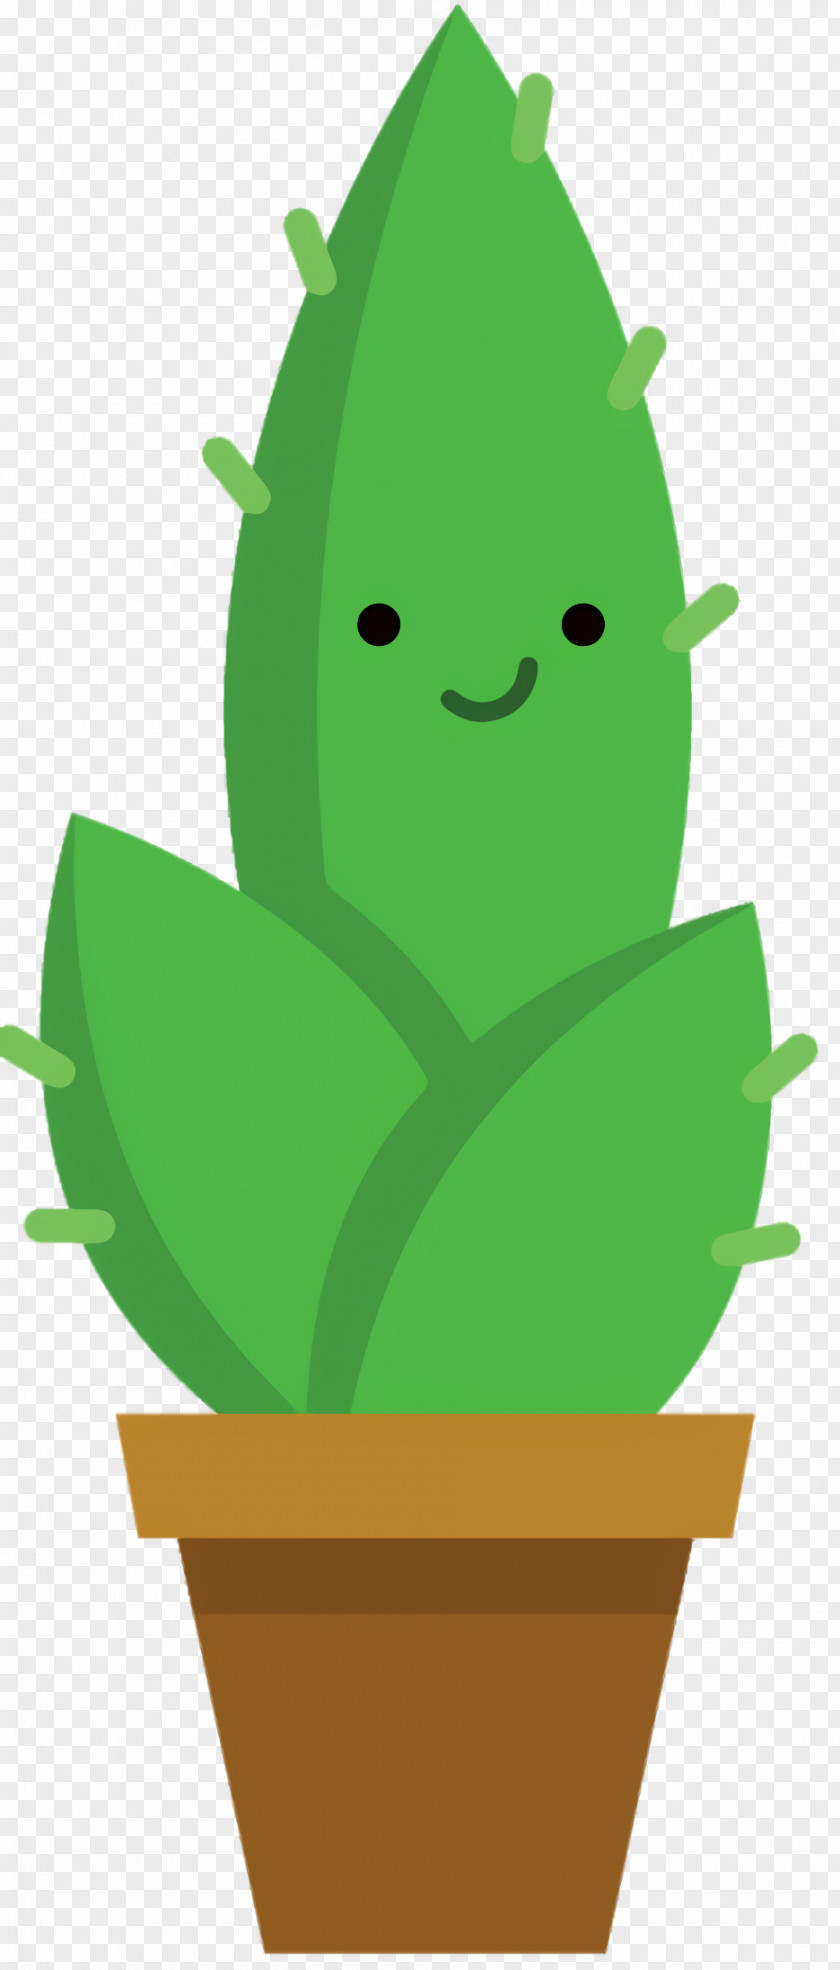 Plant Green Leaf Background PNG